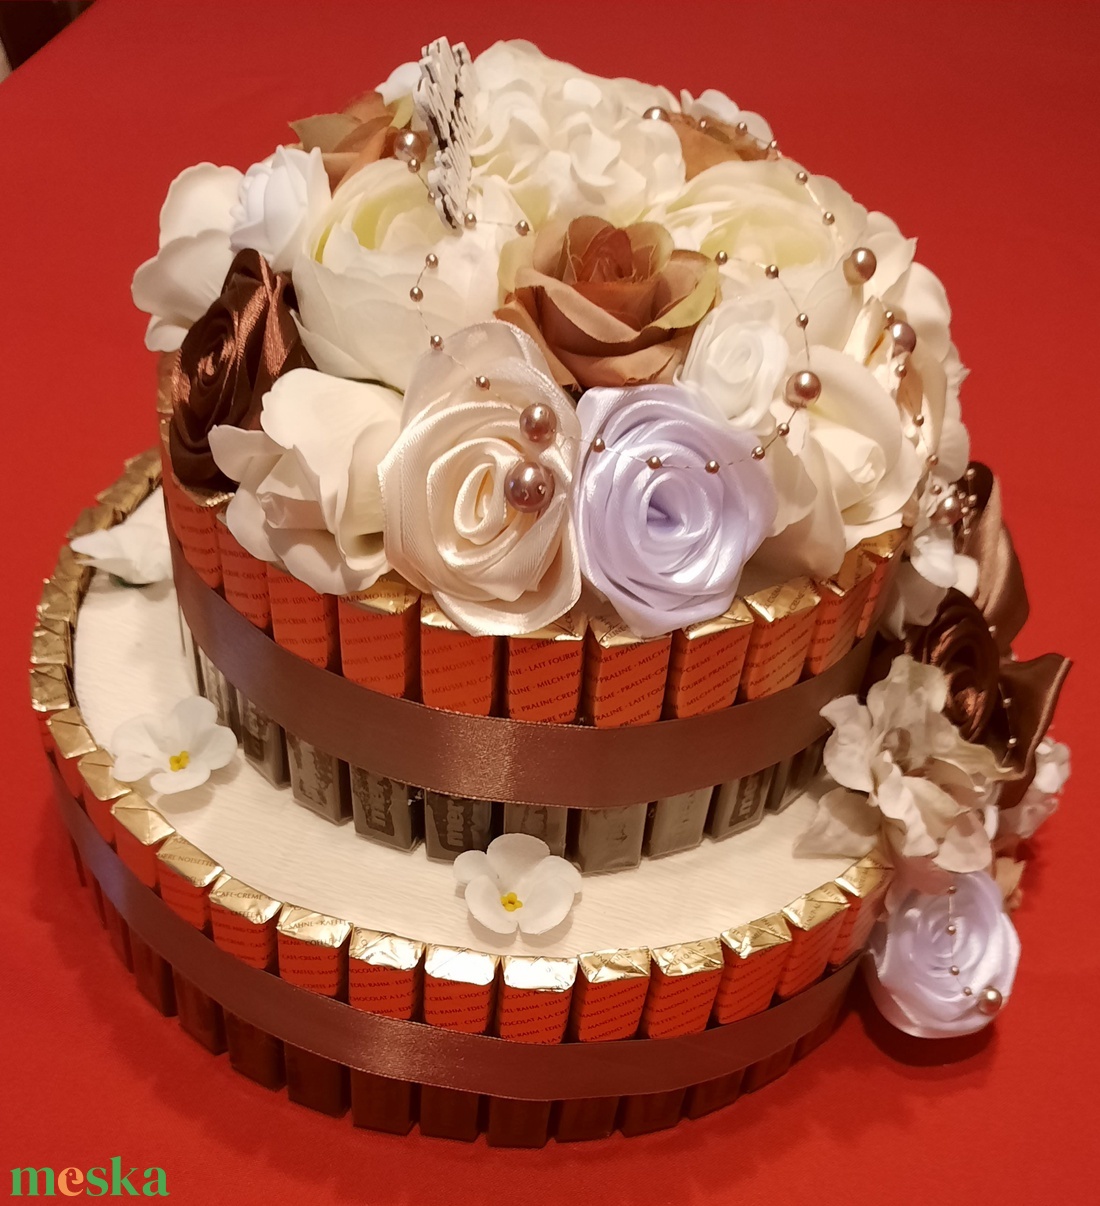 Merci torta születésnapra! - esküvő - dekoráció - asztaldísz - Meska.hu